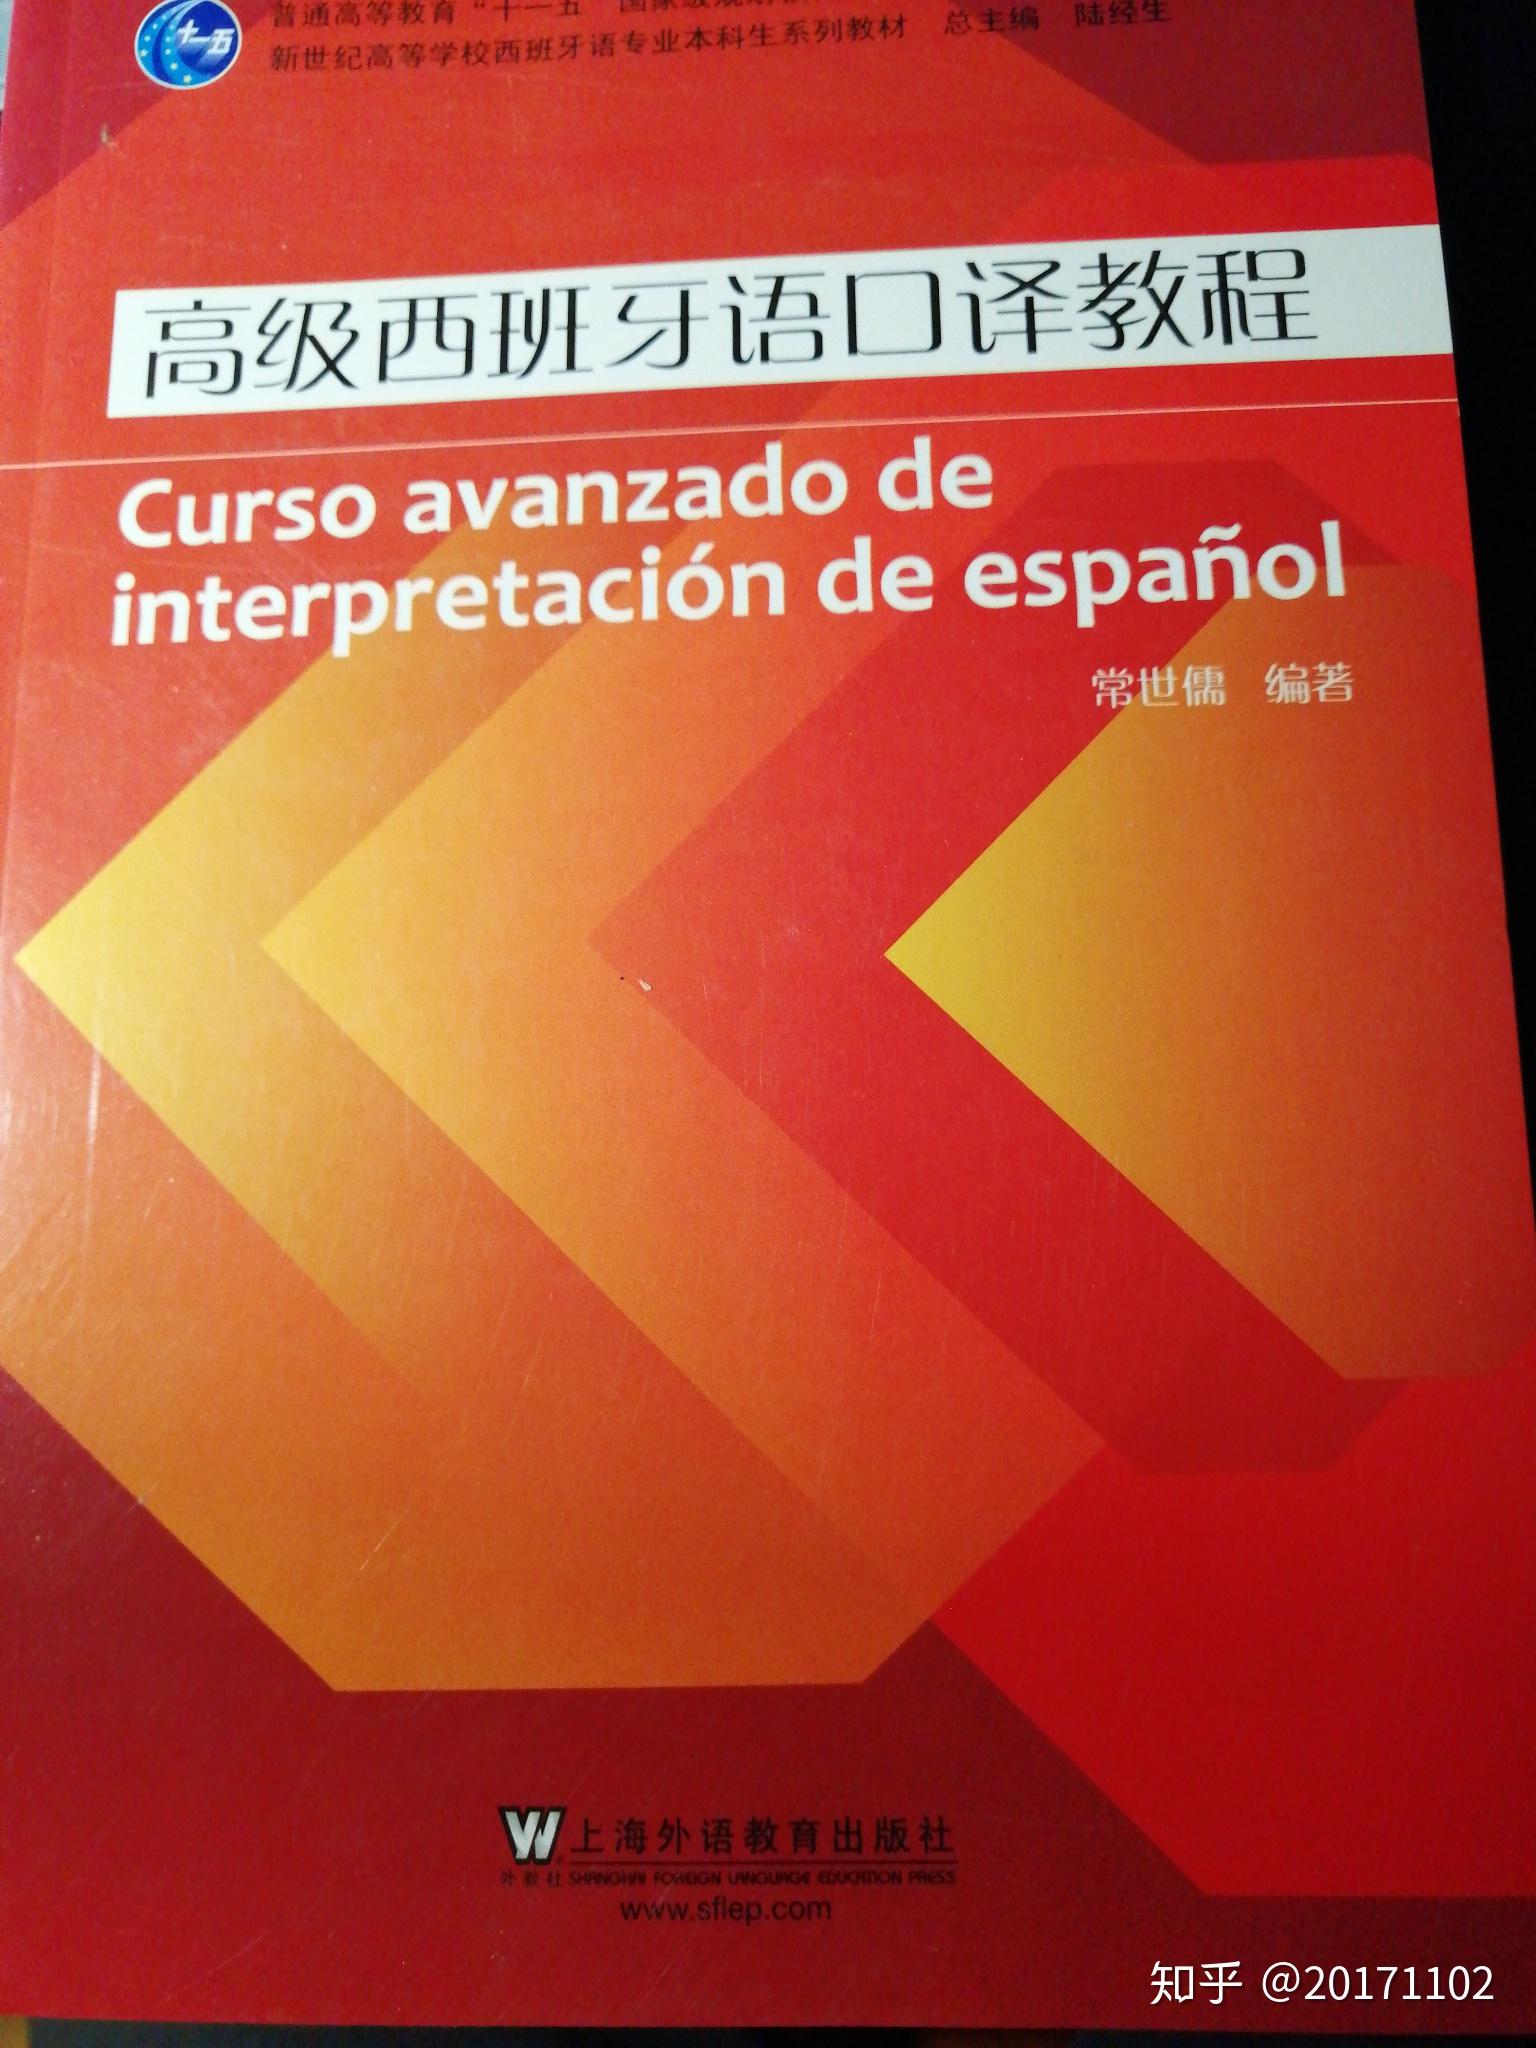 想学西班牙语有什么好的书推荐吗